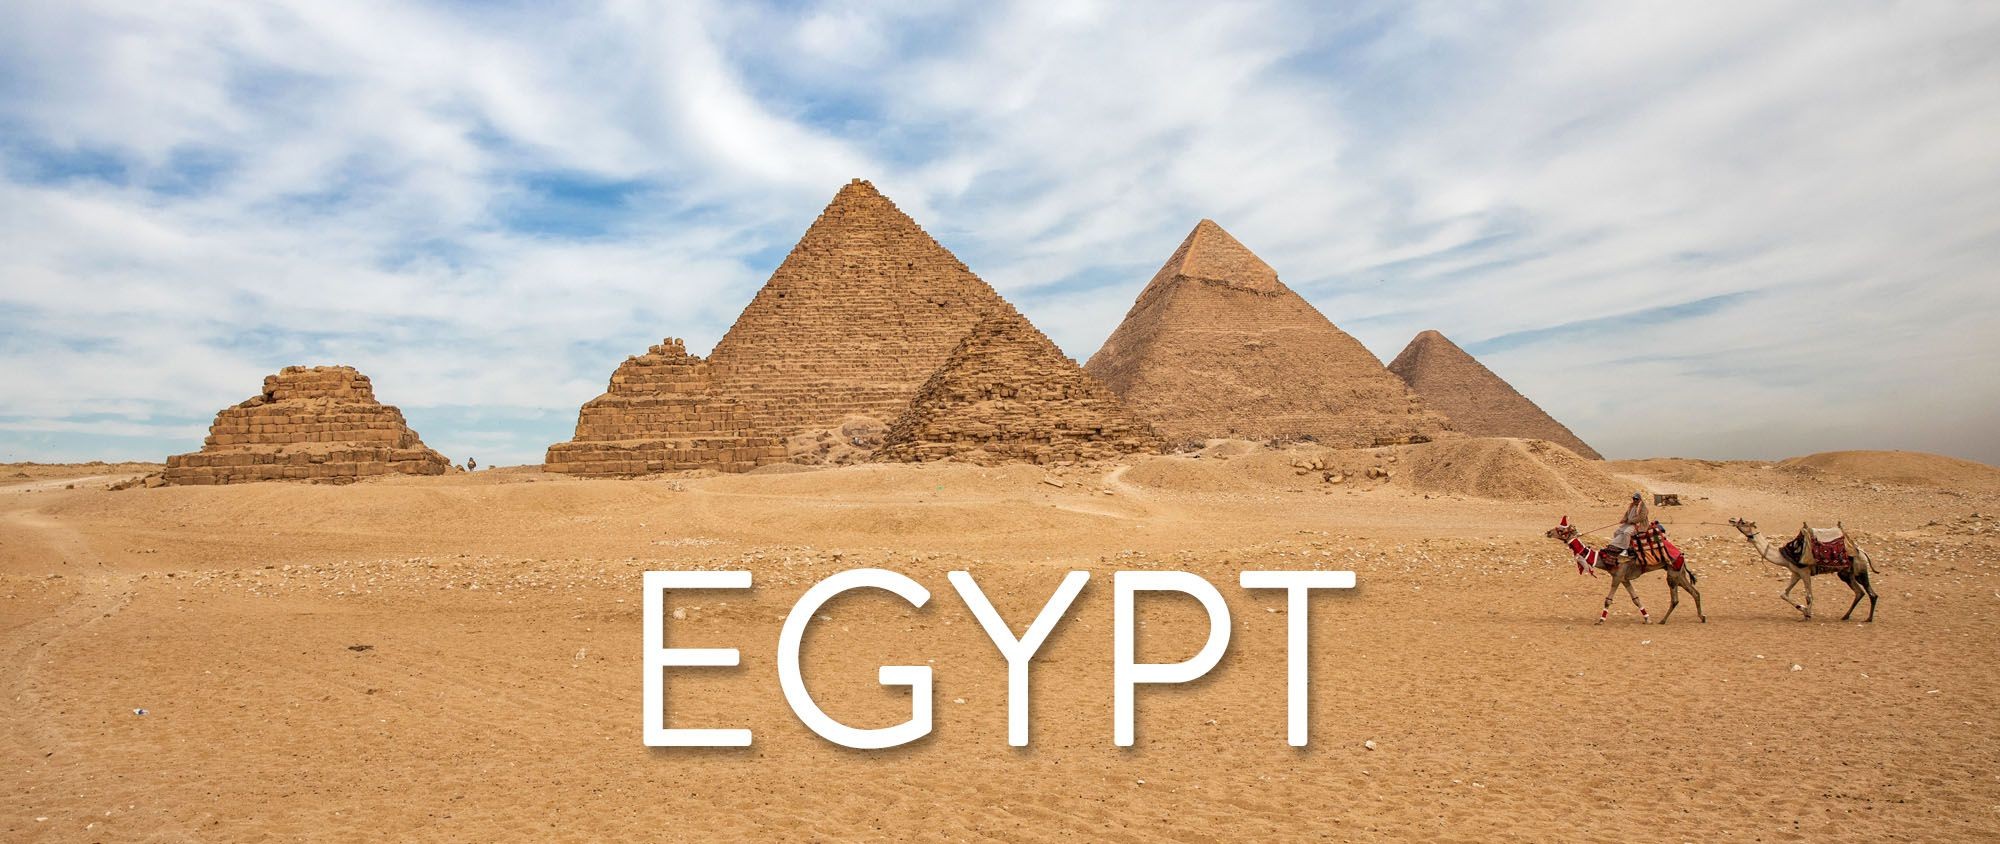 Histoire de l'Egypte - Pyramides de Gizeh